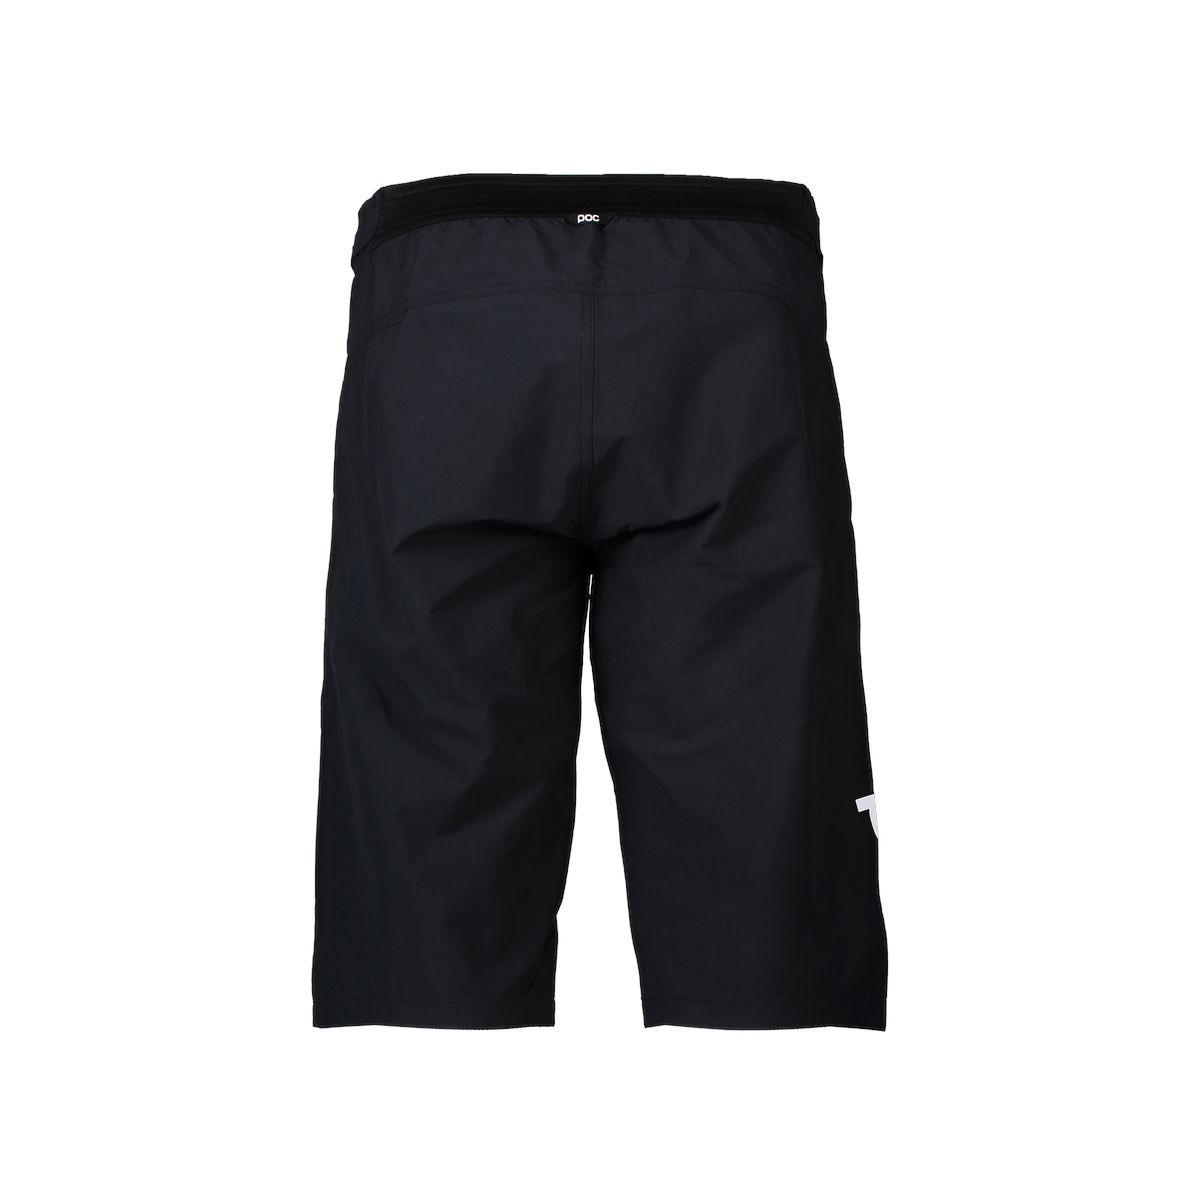 Poc | Pantaloncini Essential Enduro Uomo Uranium Black - Fabbrica Ski Sises